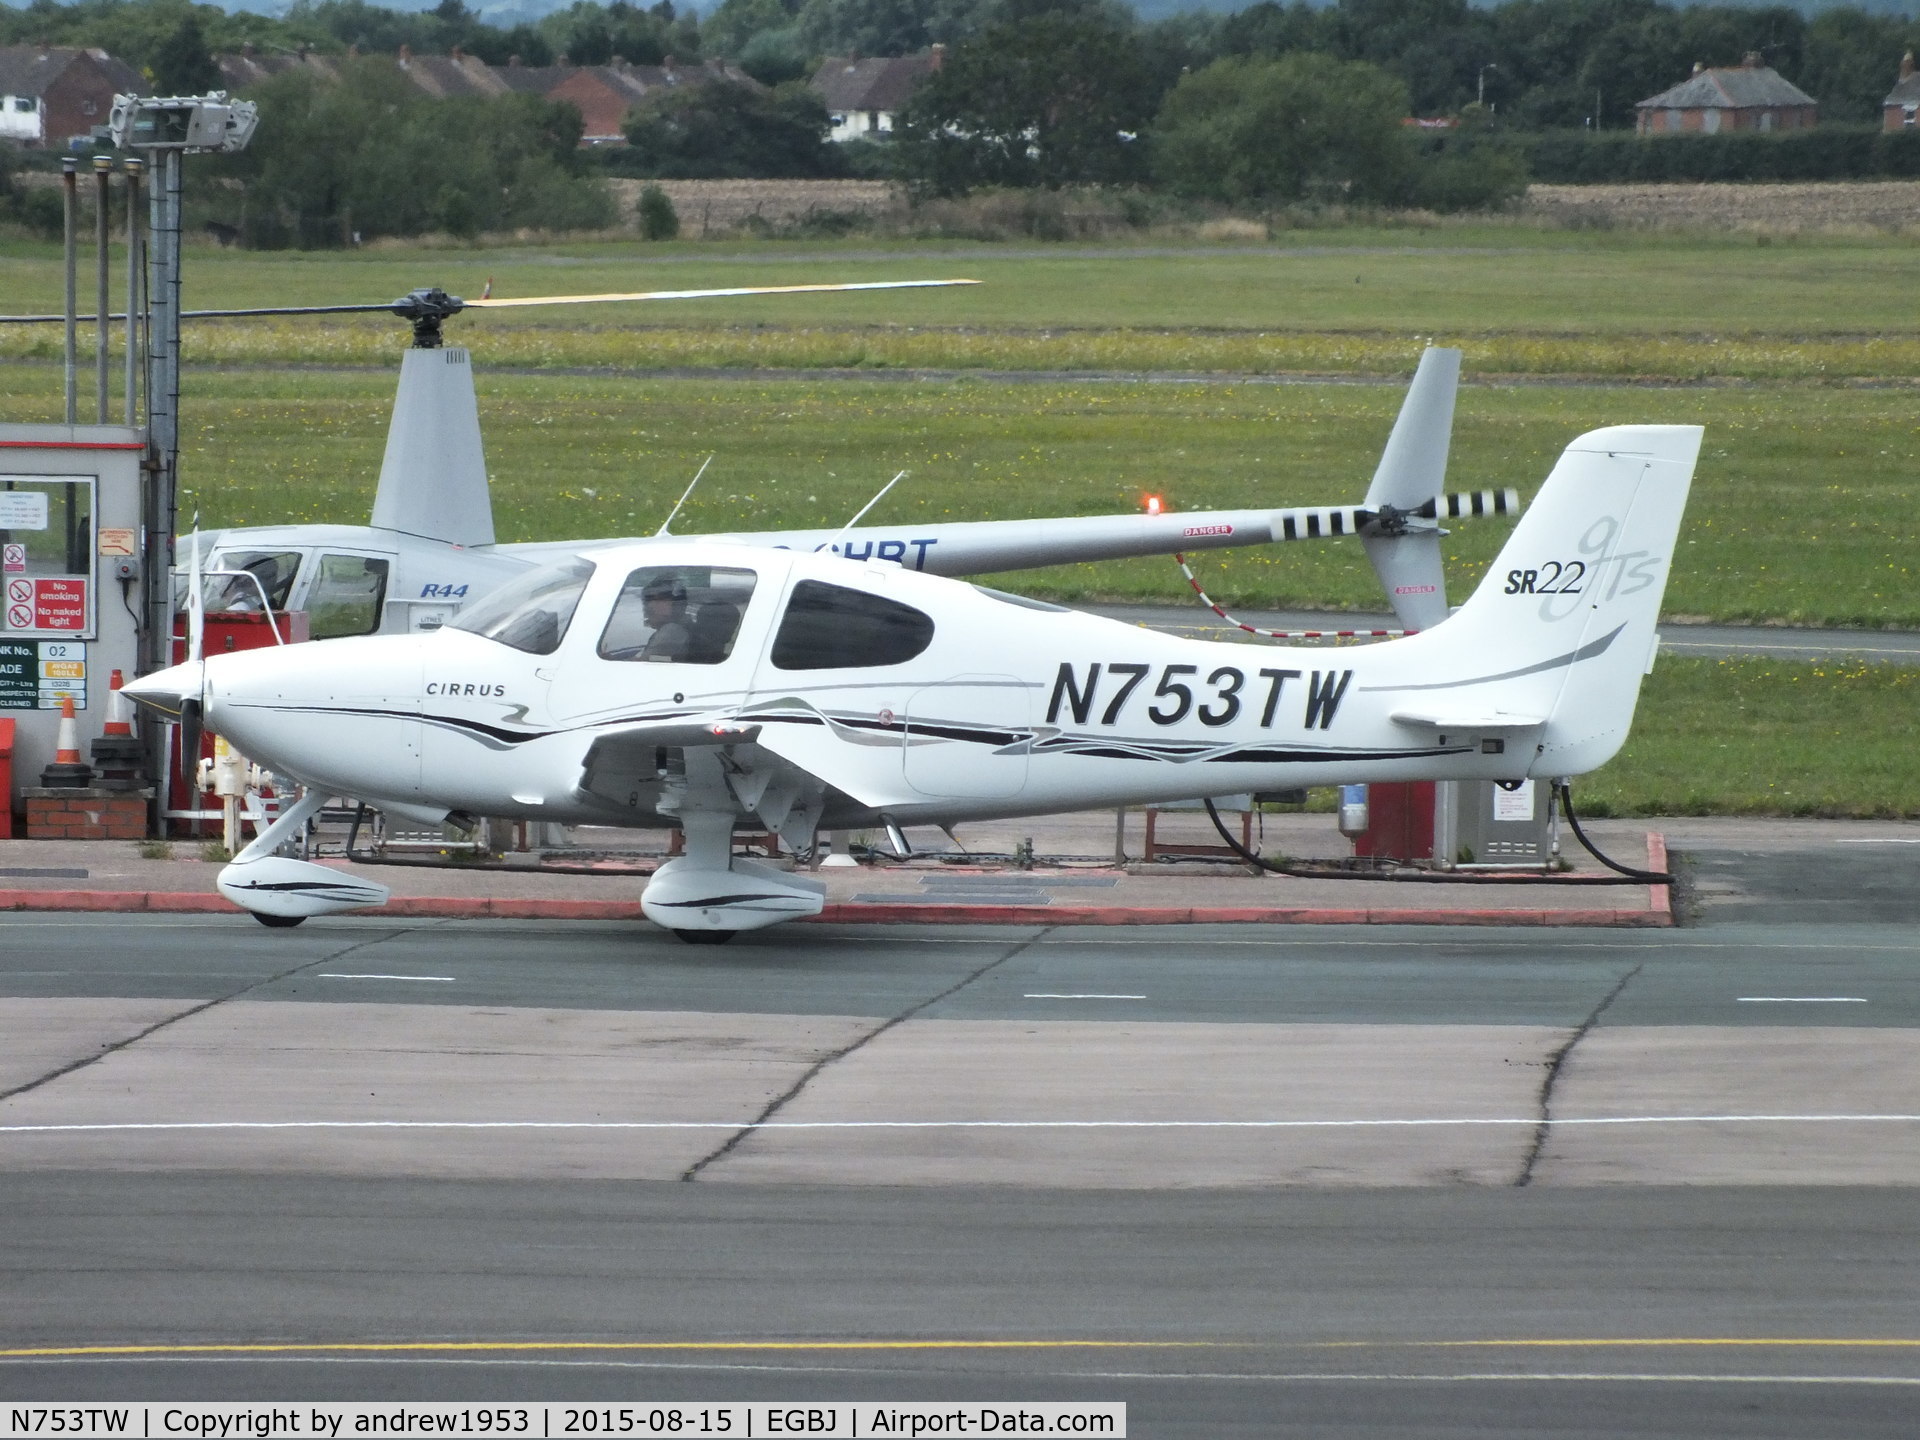 N753TW, 2005 Cirrus SR22 GTS C/N 1413, N753TW at Gloucestershire Airport.